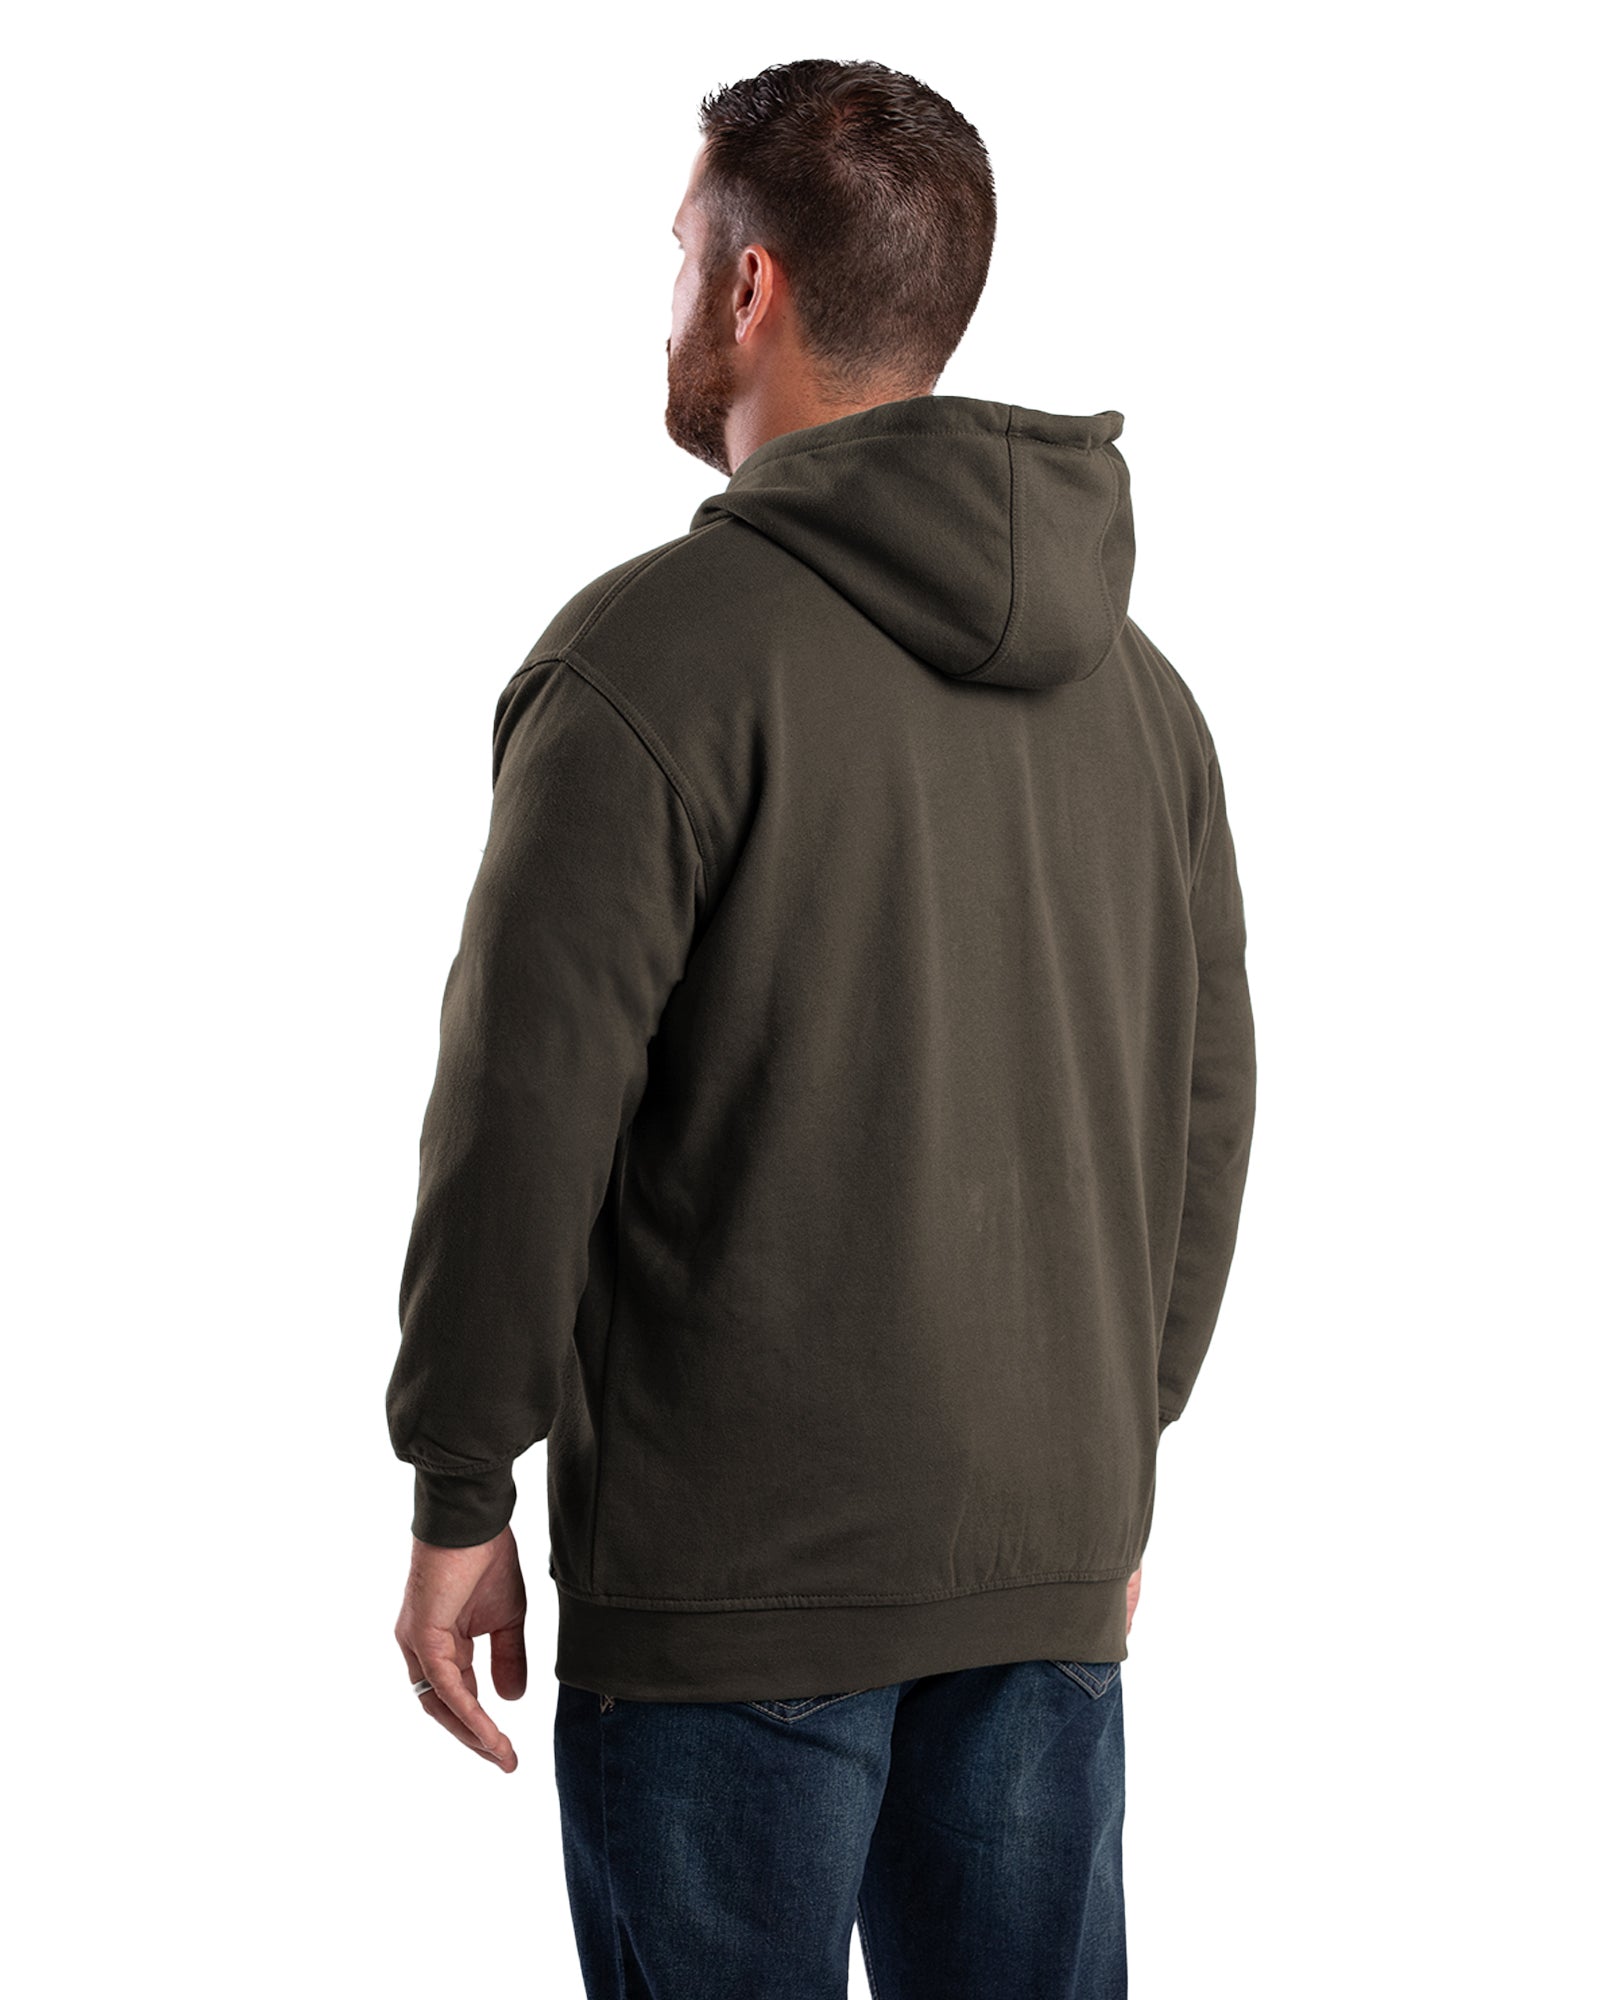 SZ101DBN Heritage Thermal-Lined Full-Zip Hooded Sweatshirt